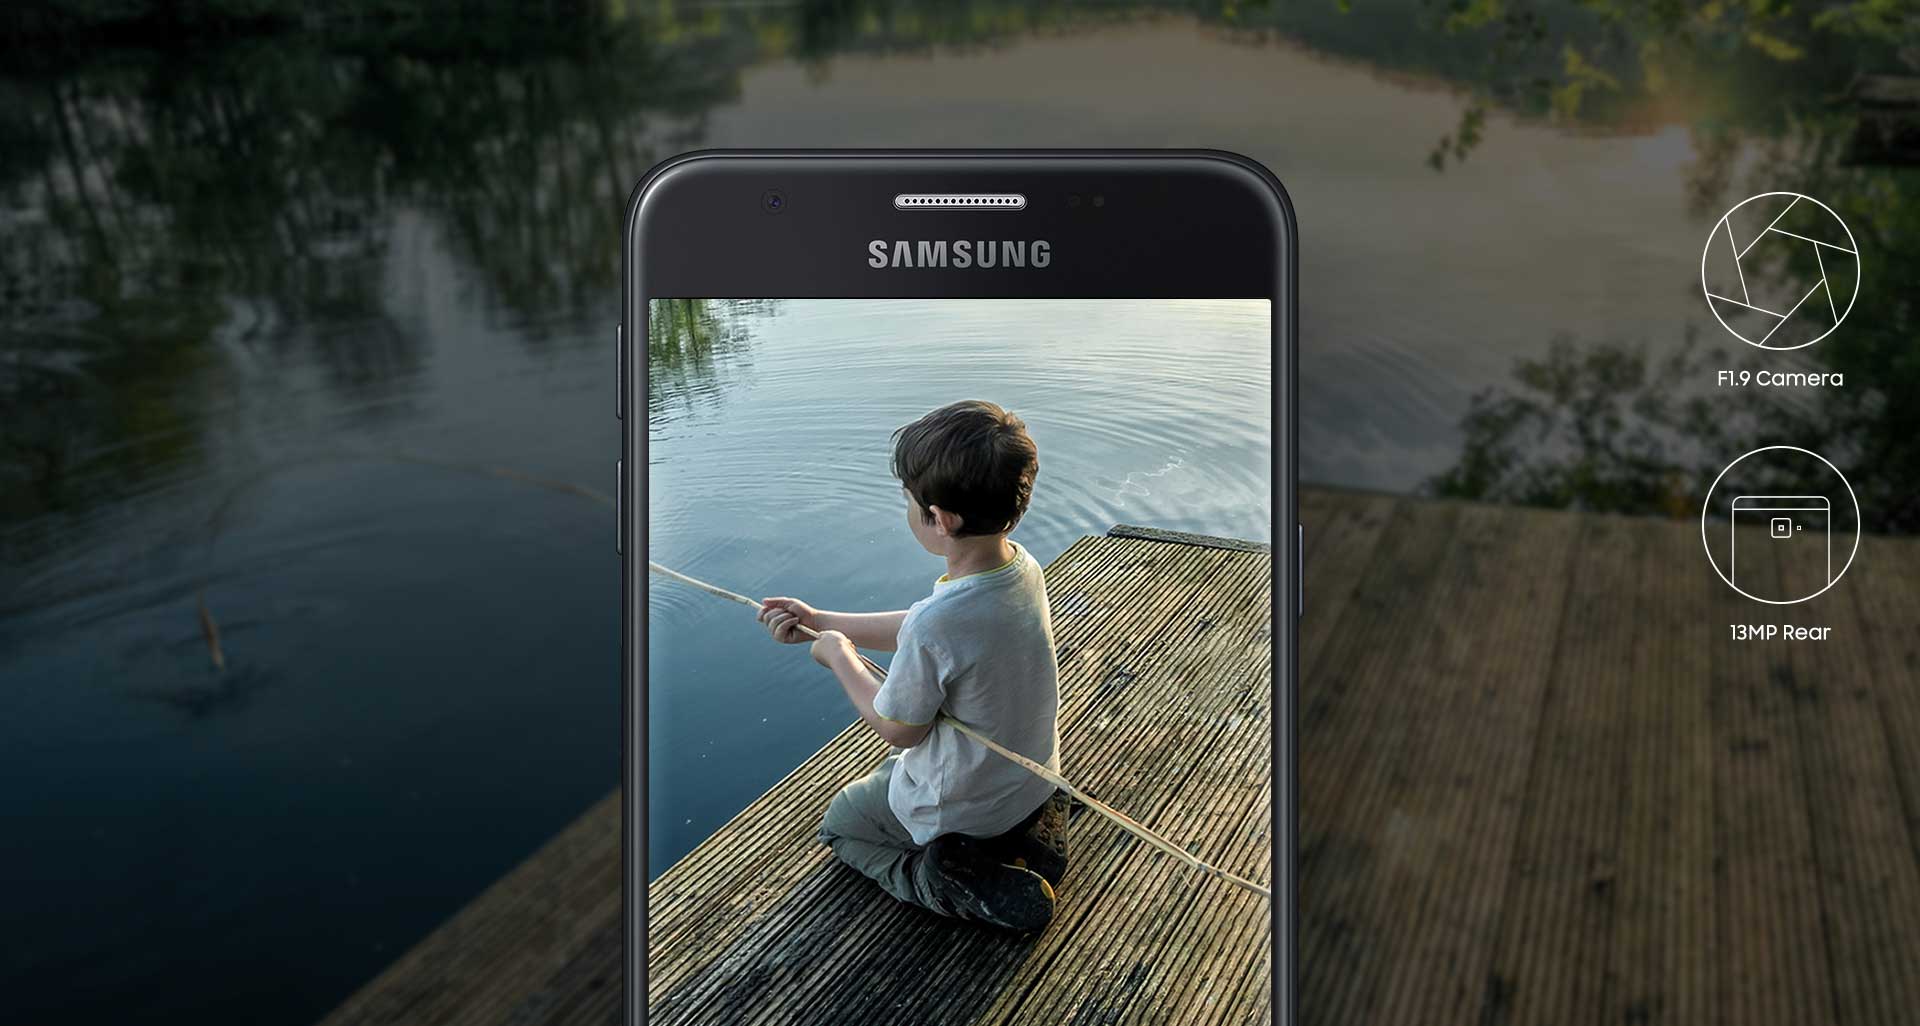 تصاویری روشن در گوشی سامسونگ Galaxy J7 Prime